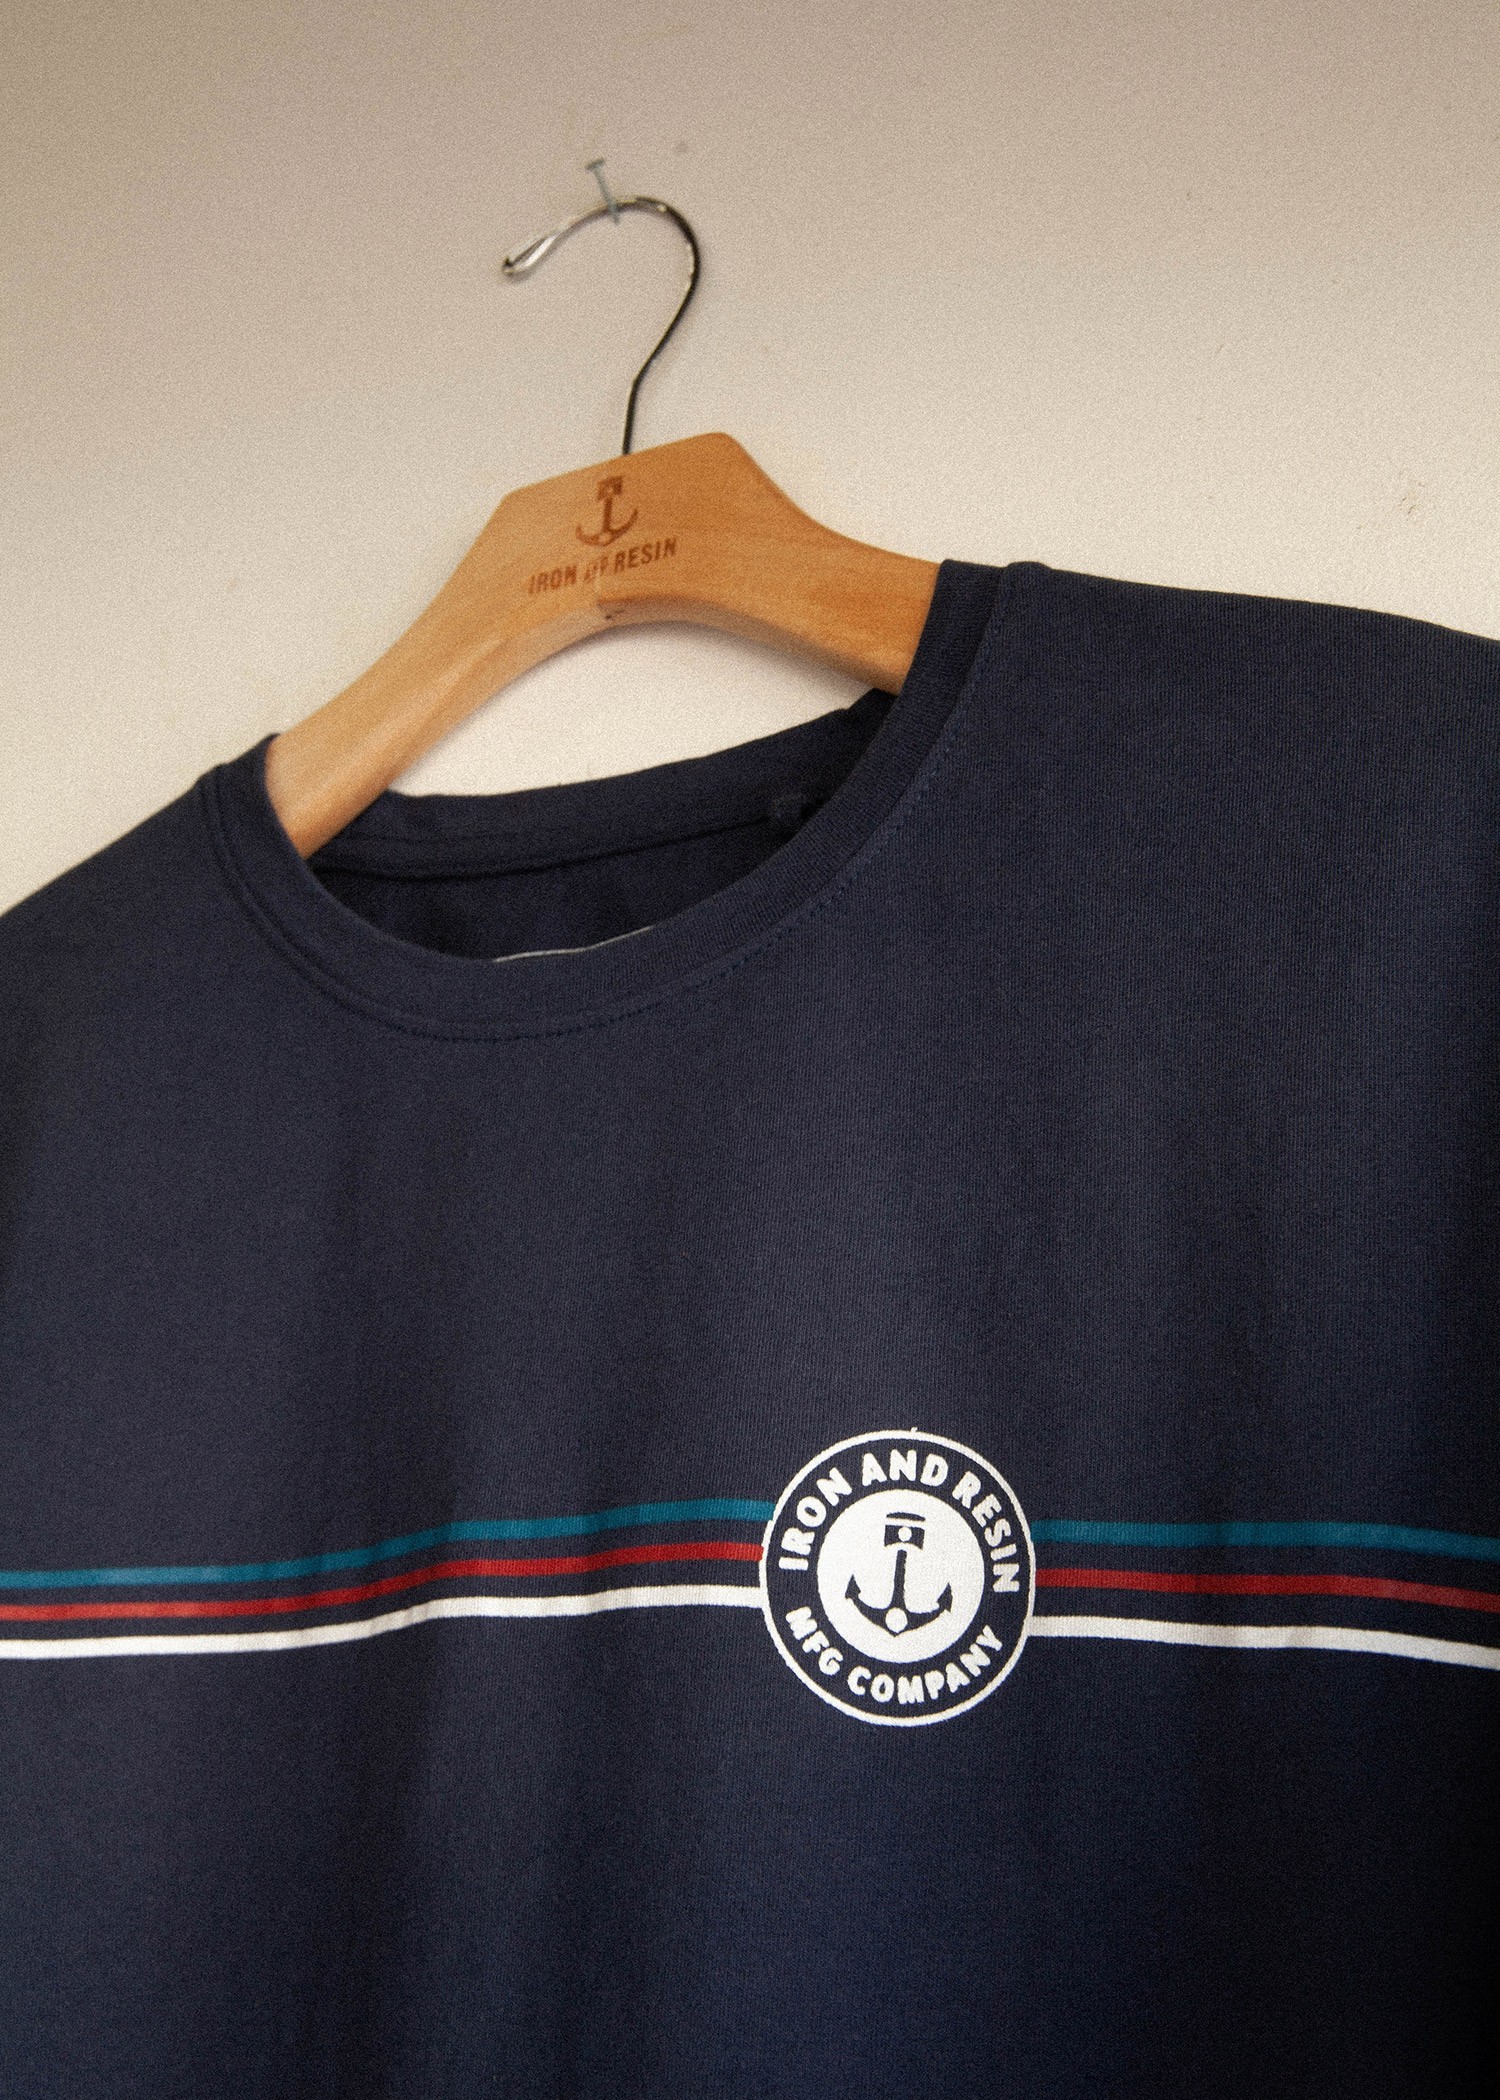 Trophy - T-shirt textile homme - Accueil